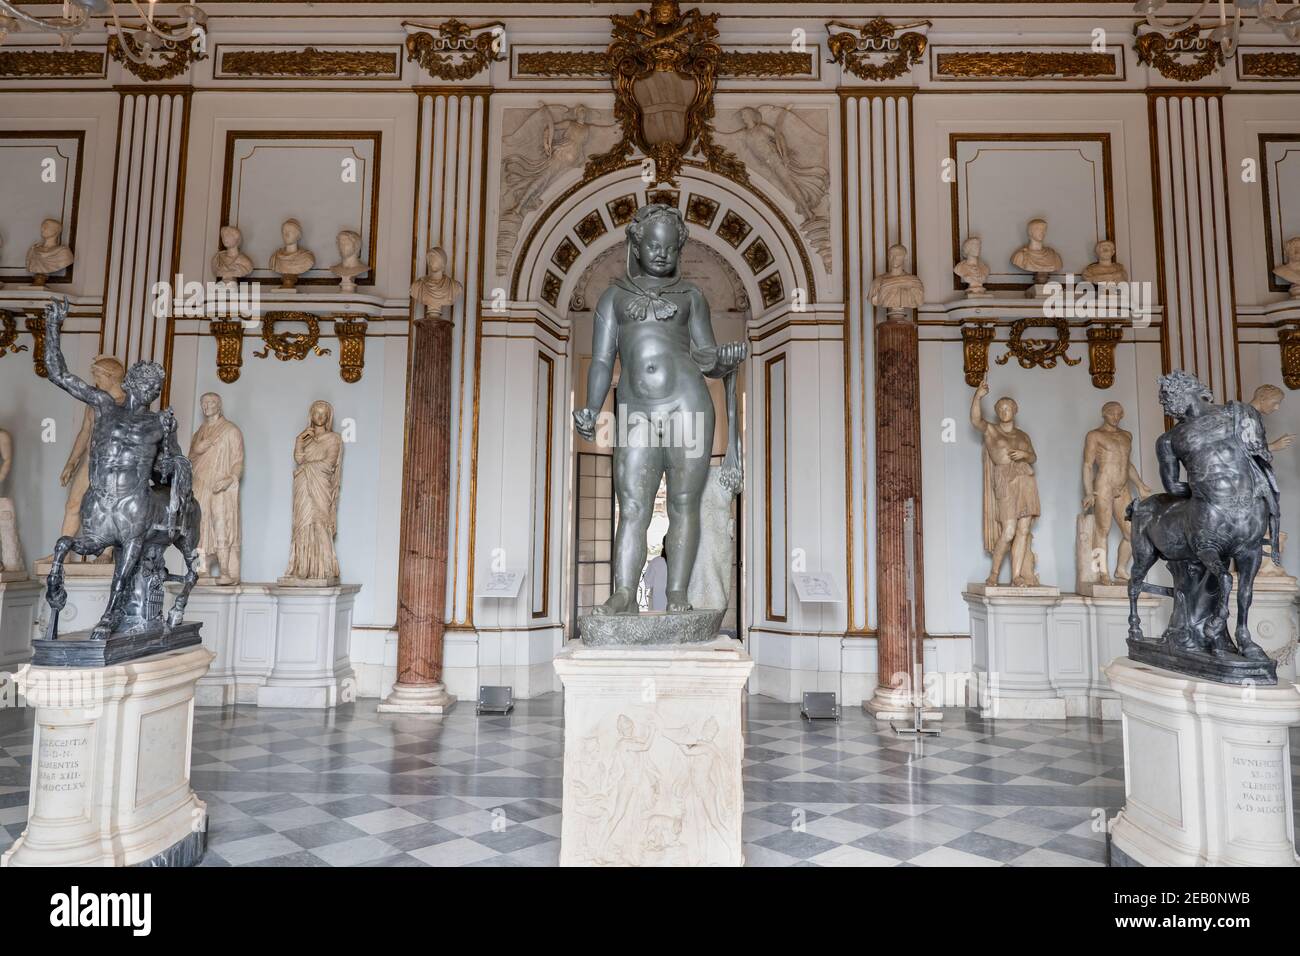 Musée Capitoline (Musei Capitolini) intérieur, statues et sculptures dans la Grande salle du Palazzo Nuovo, Rome, Italie Banque D'Images